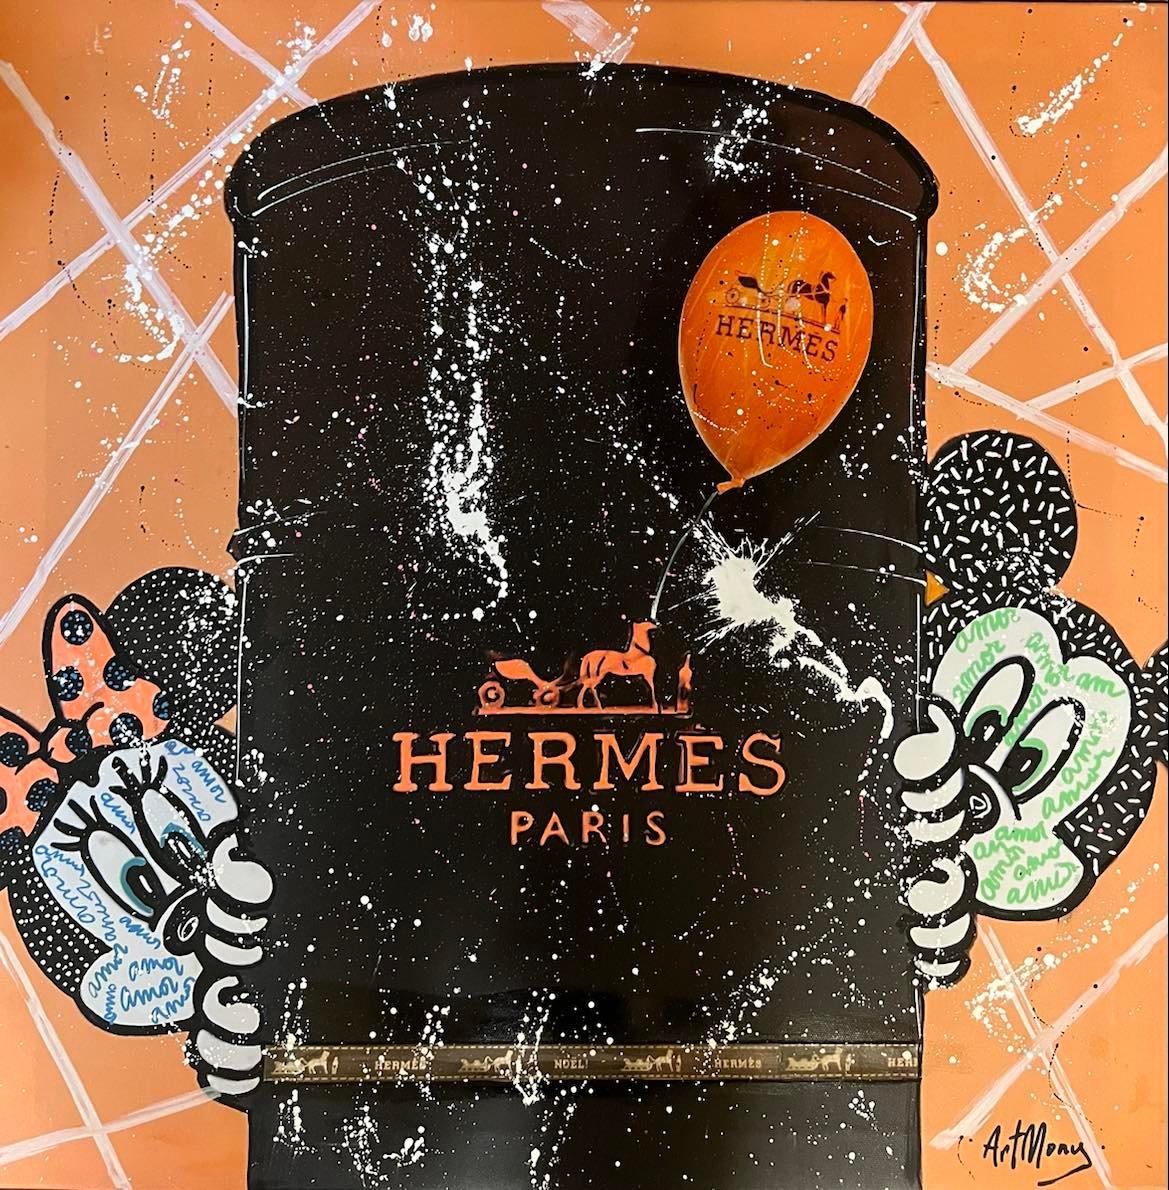 Hermès lovers